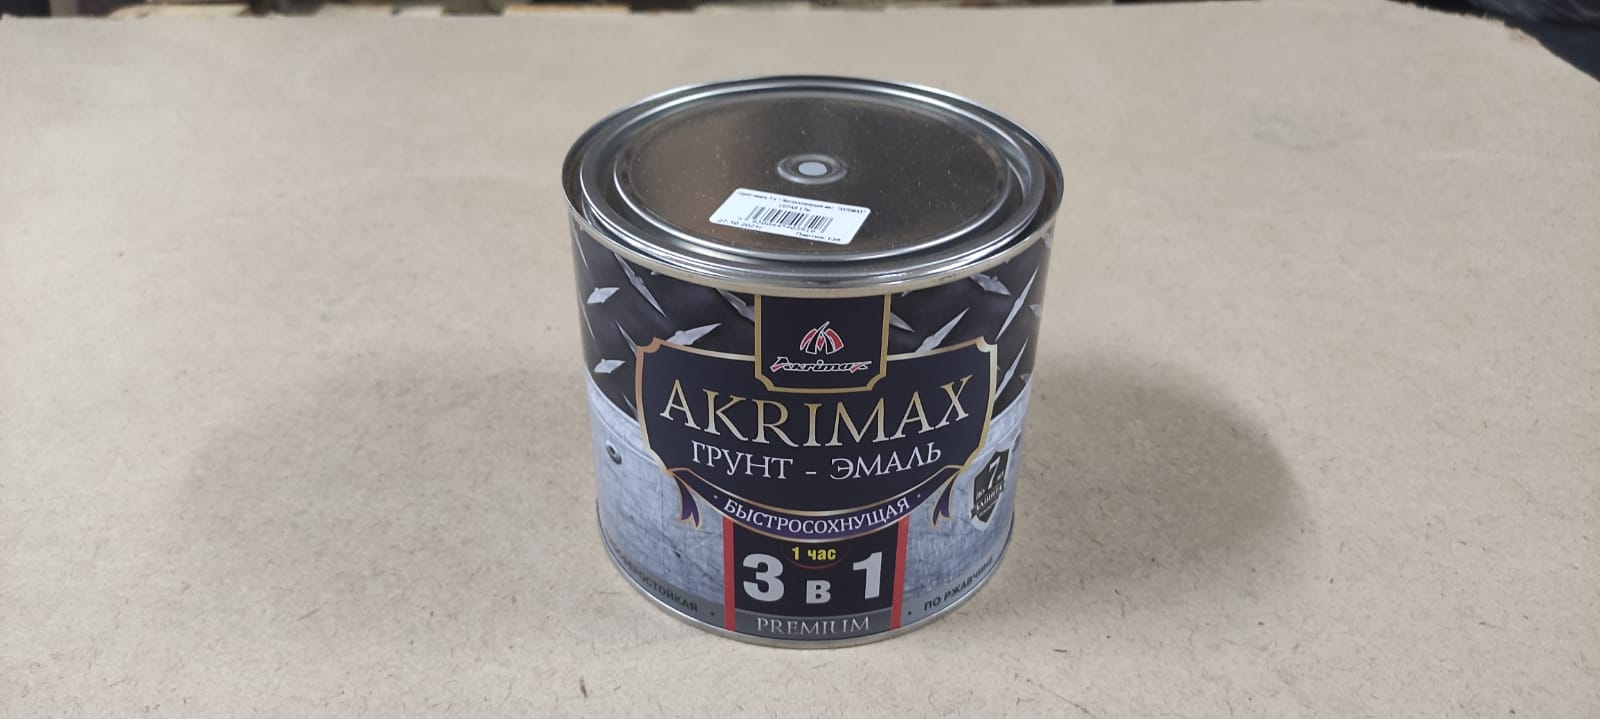 Грунт - эмаль по ржавчине 3 в1 быстросохнущая матовая Akrimax 1,7 кг (серая)